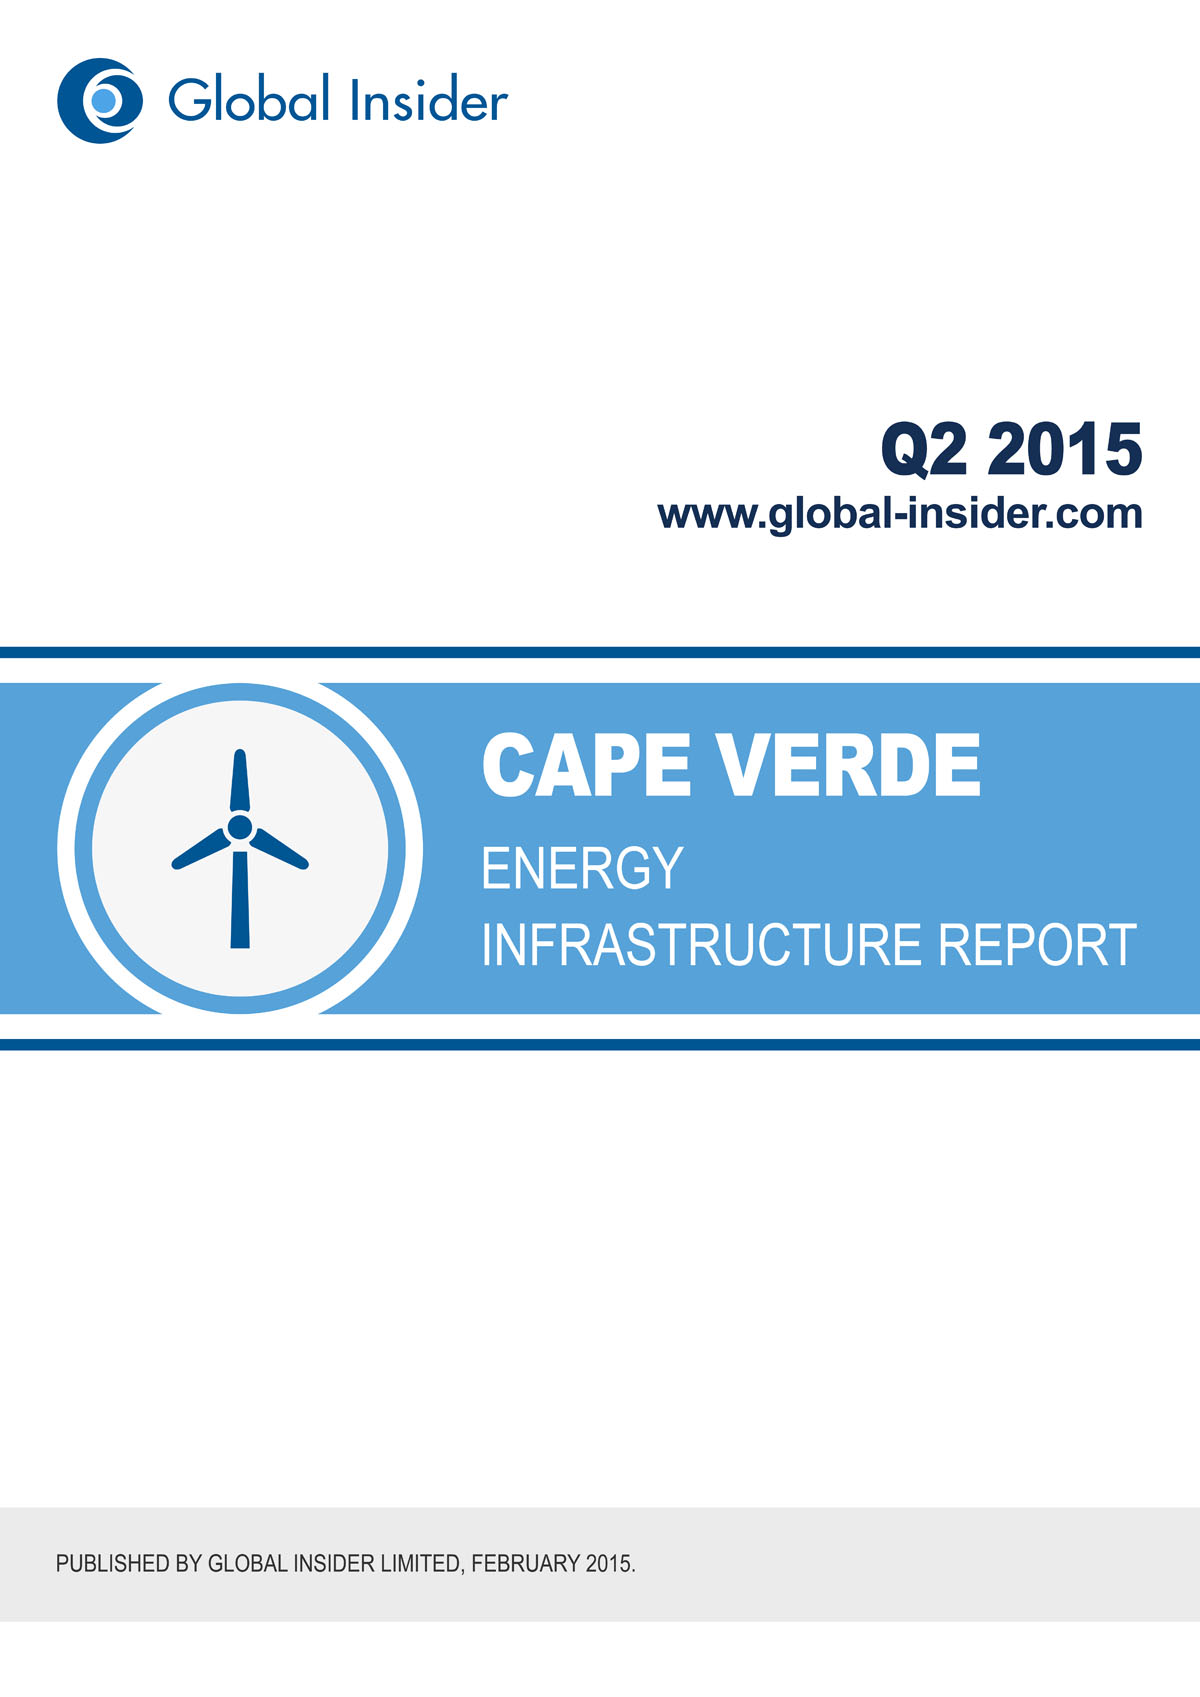 Cape Verde Energy Infrastructure Report